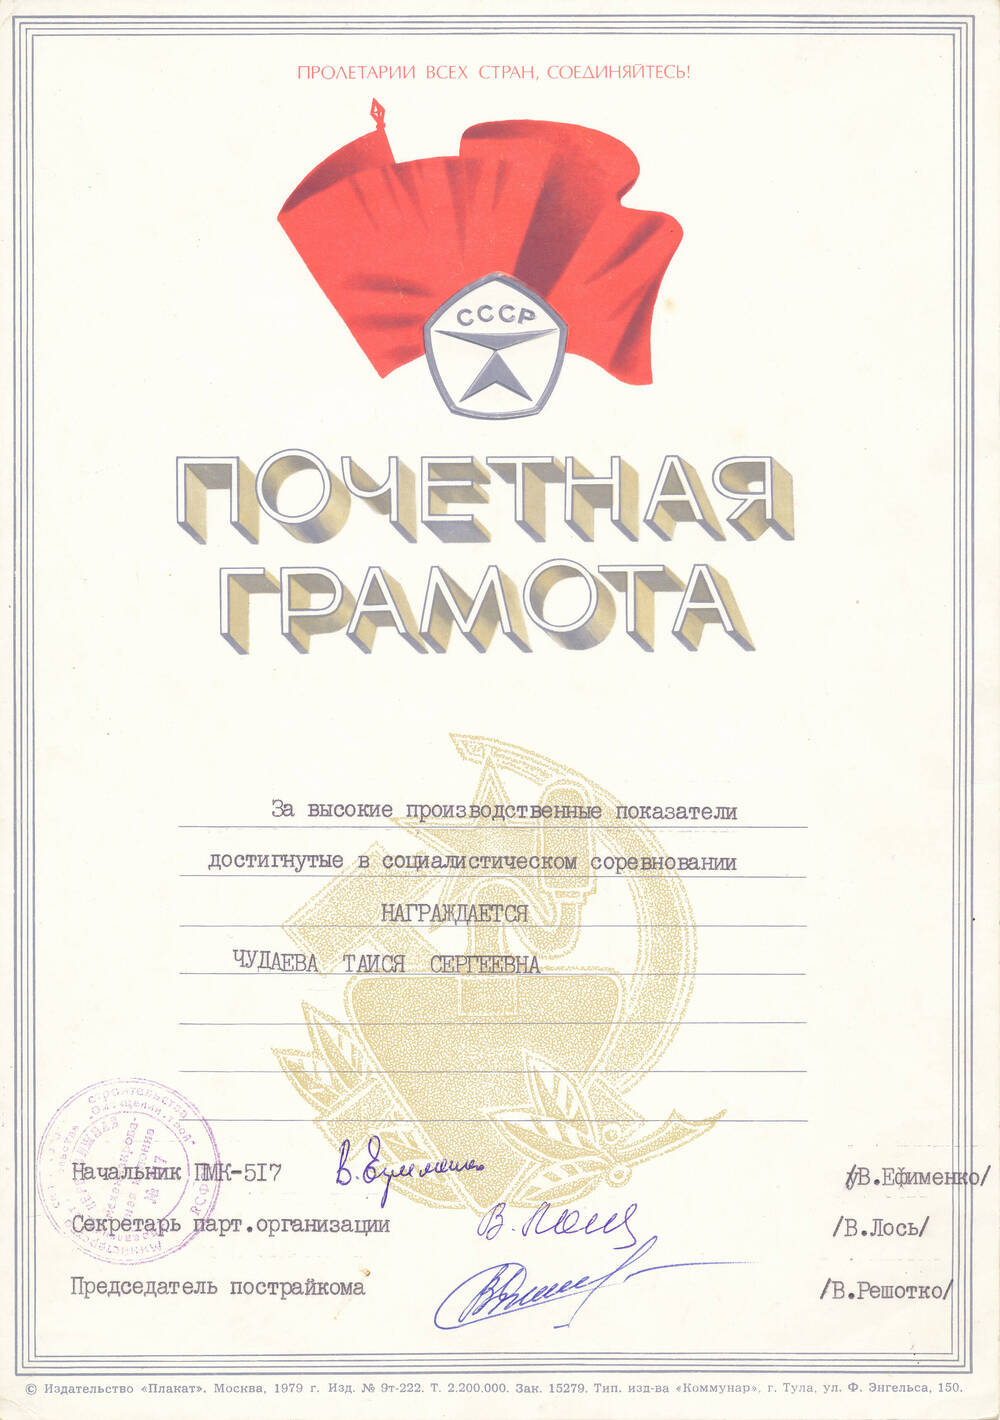 Почетная грамота Чудаевой Т.С. за высокие показатели, достигнутые в соц. соревновании от администрации ПМК-517, парторганизации, постройкома